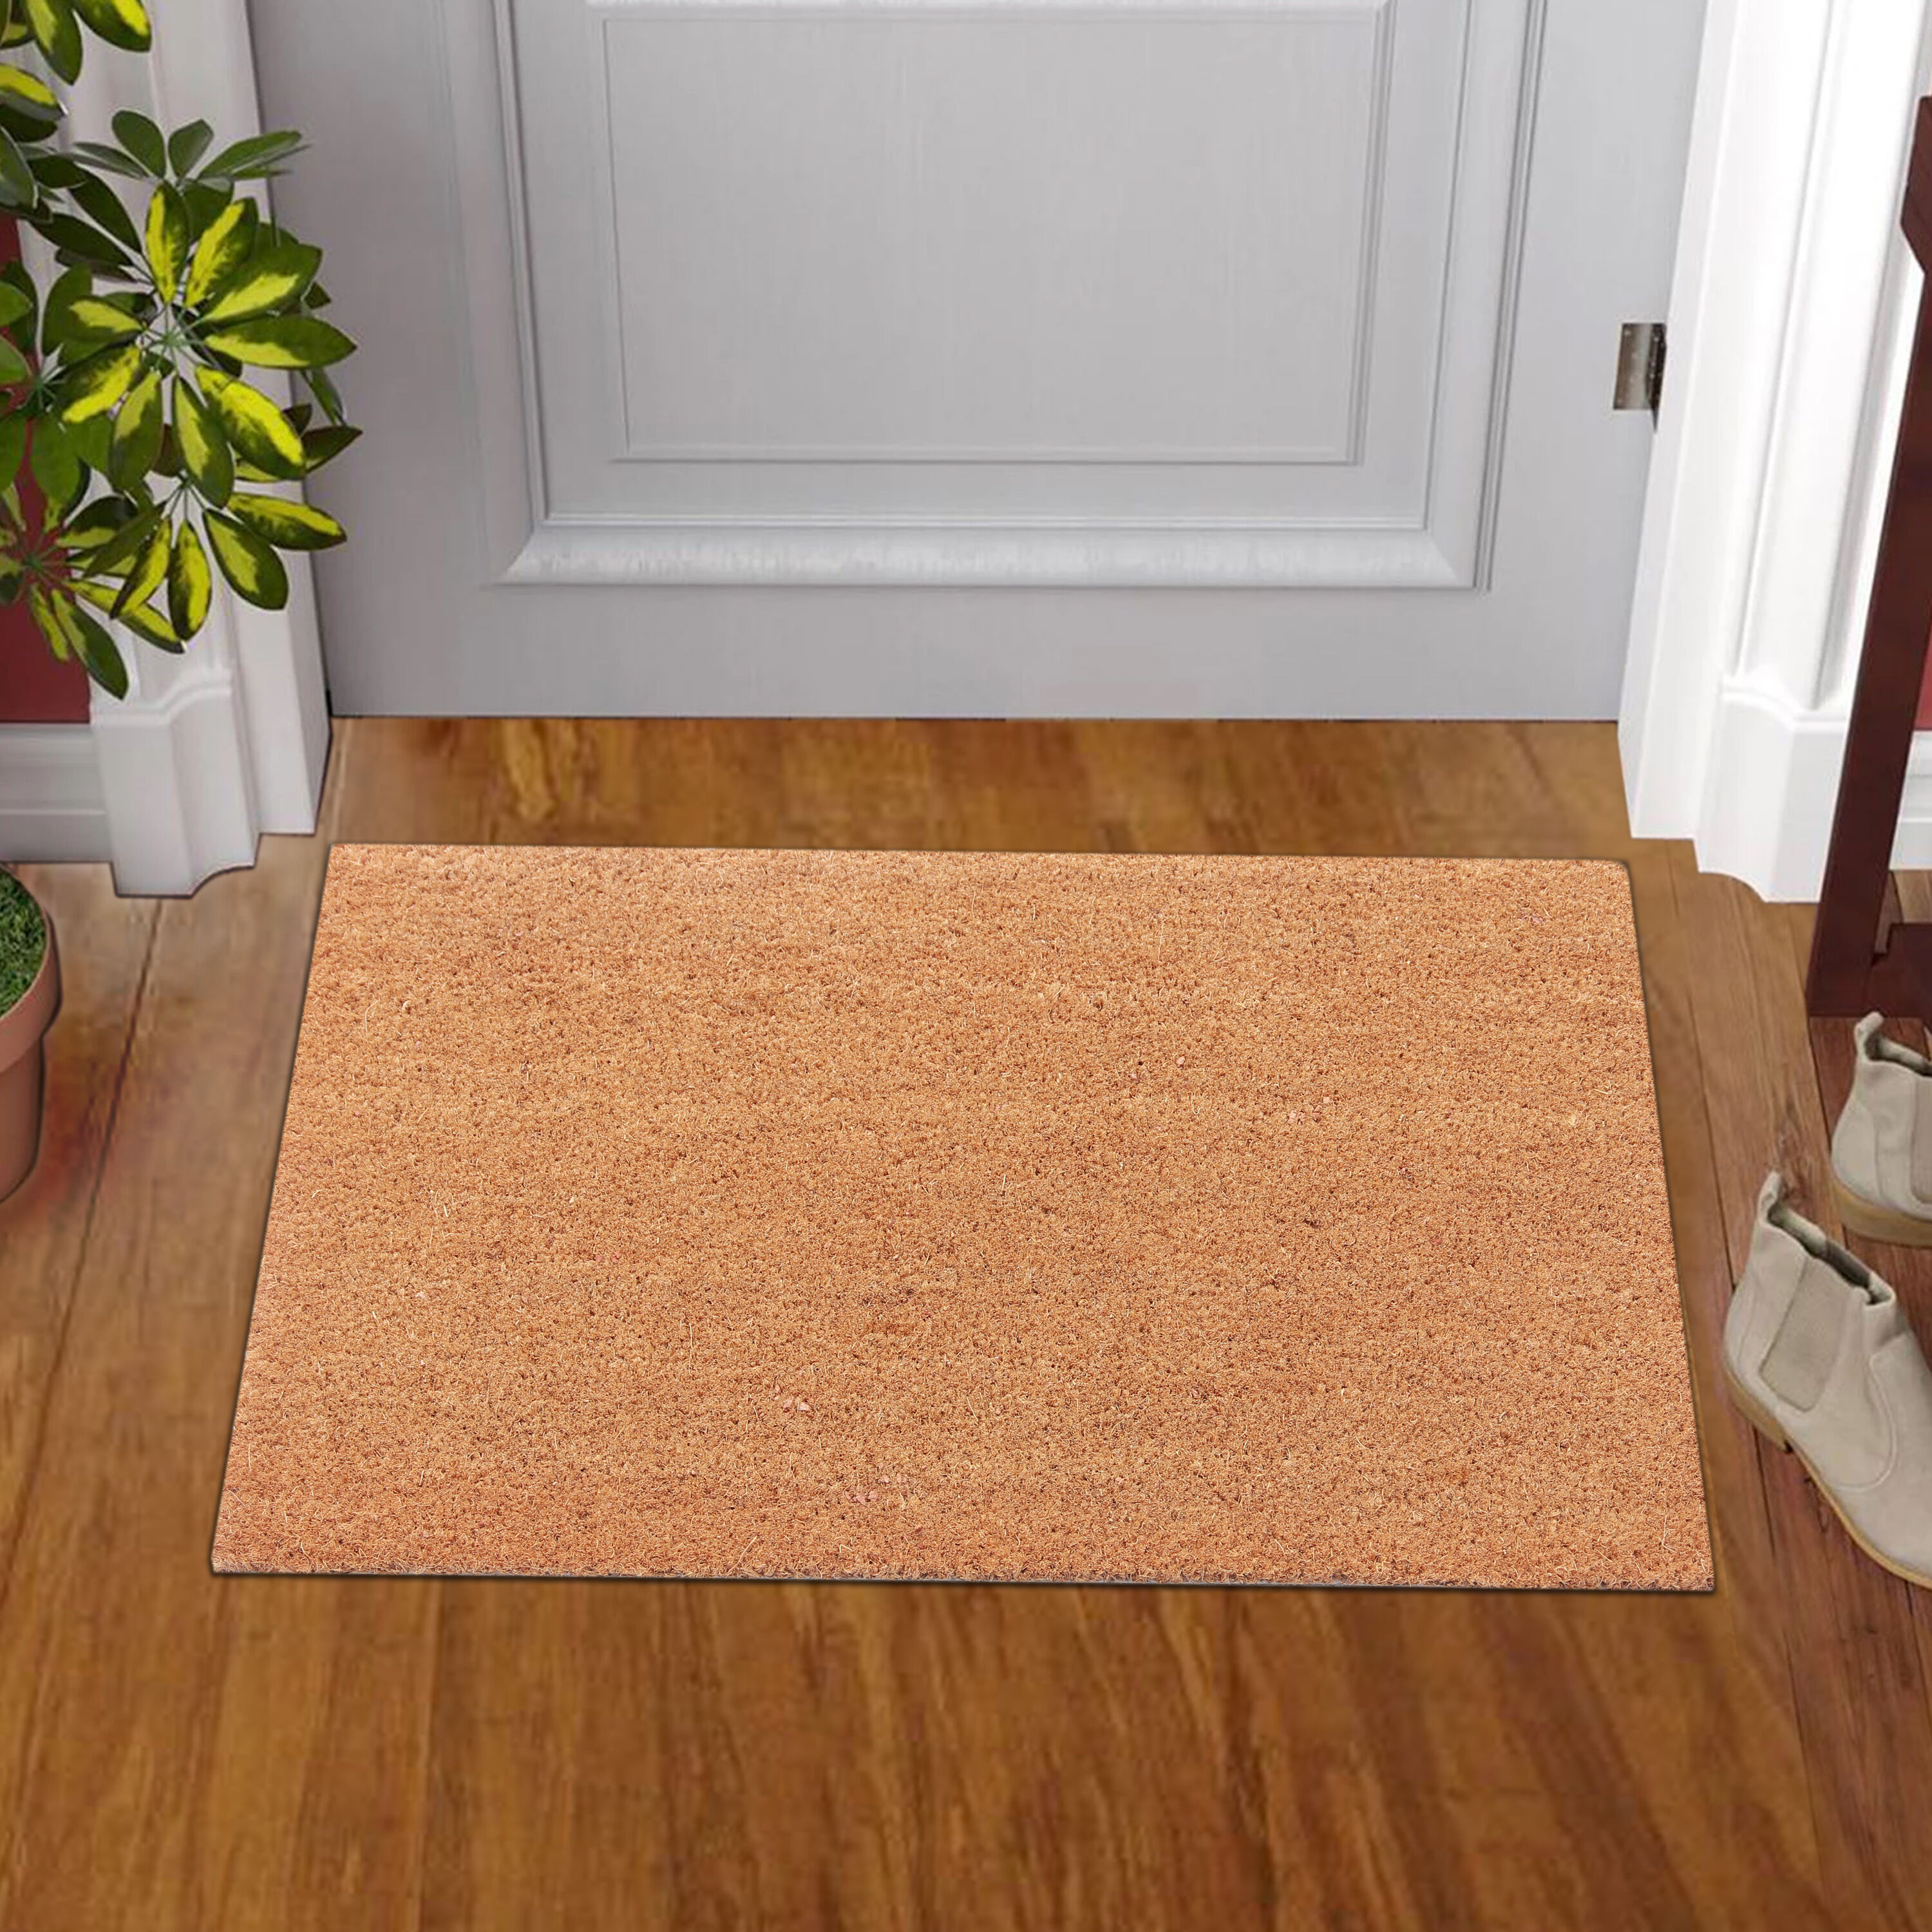 Blank Doormats, Doormat Plain, Coir Door Mat, Simple Doormat